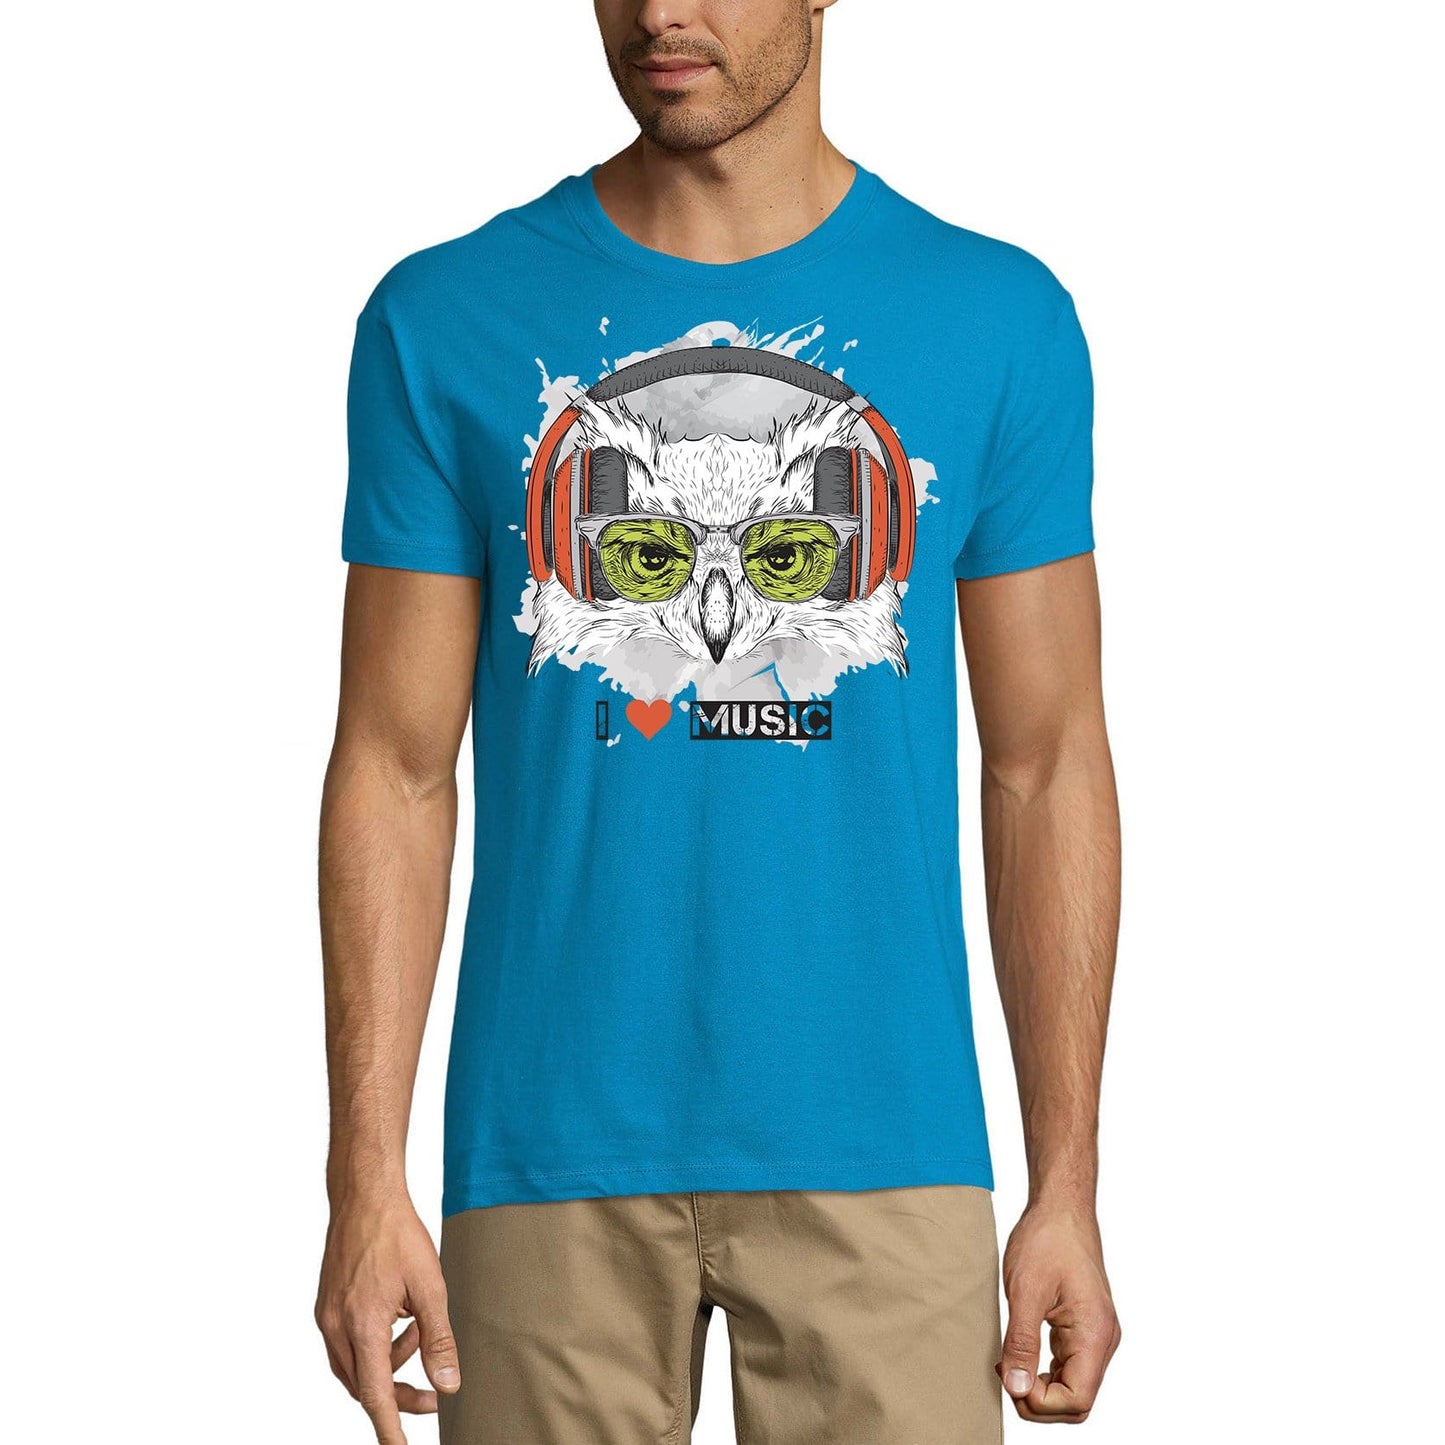 ULTRABASIC Men's T-Shirt Cool Owl - I Love Music Funny Tee Shirt